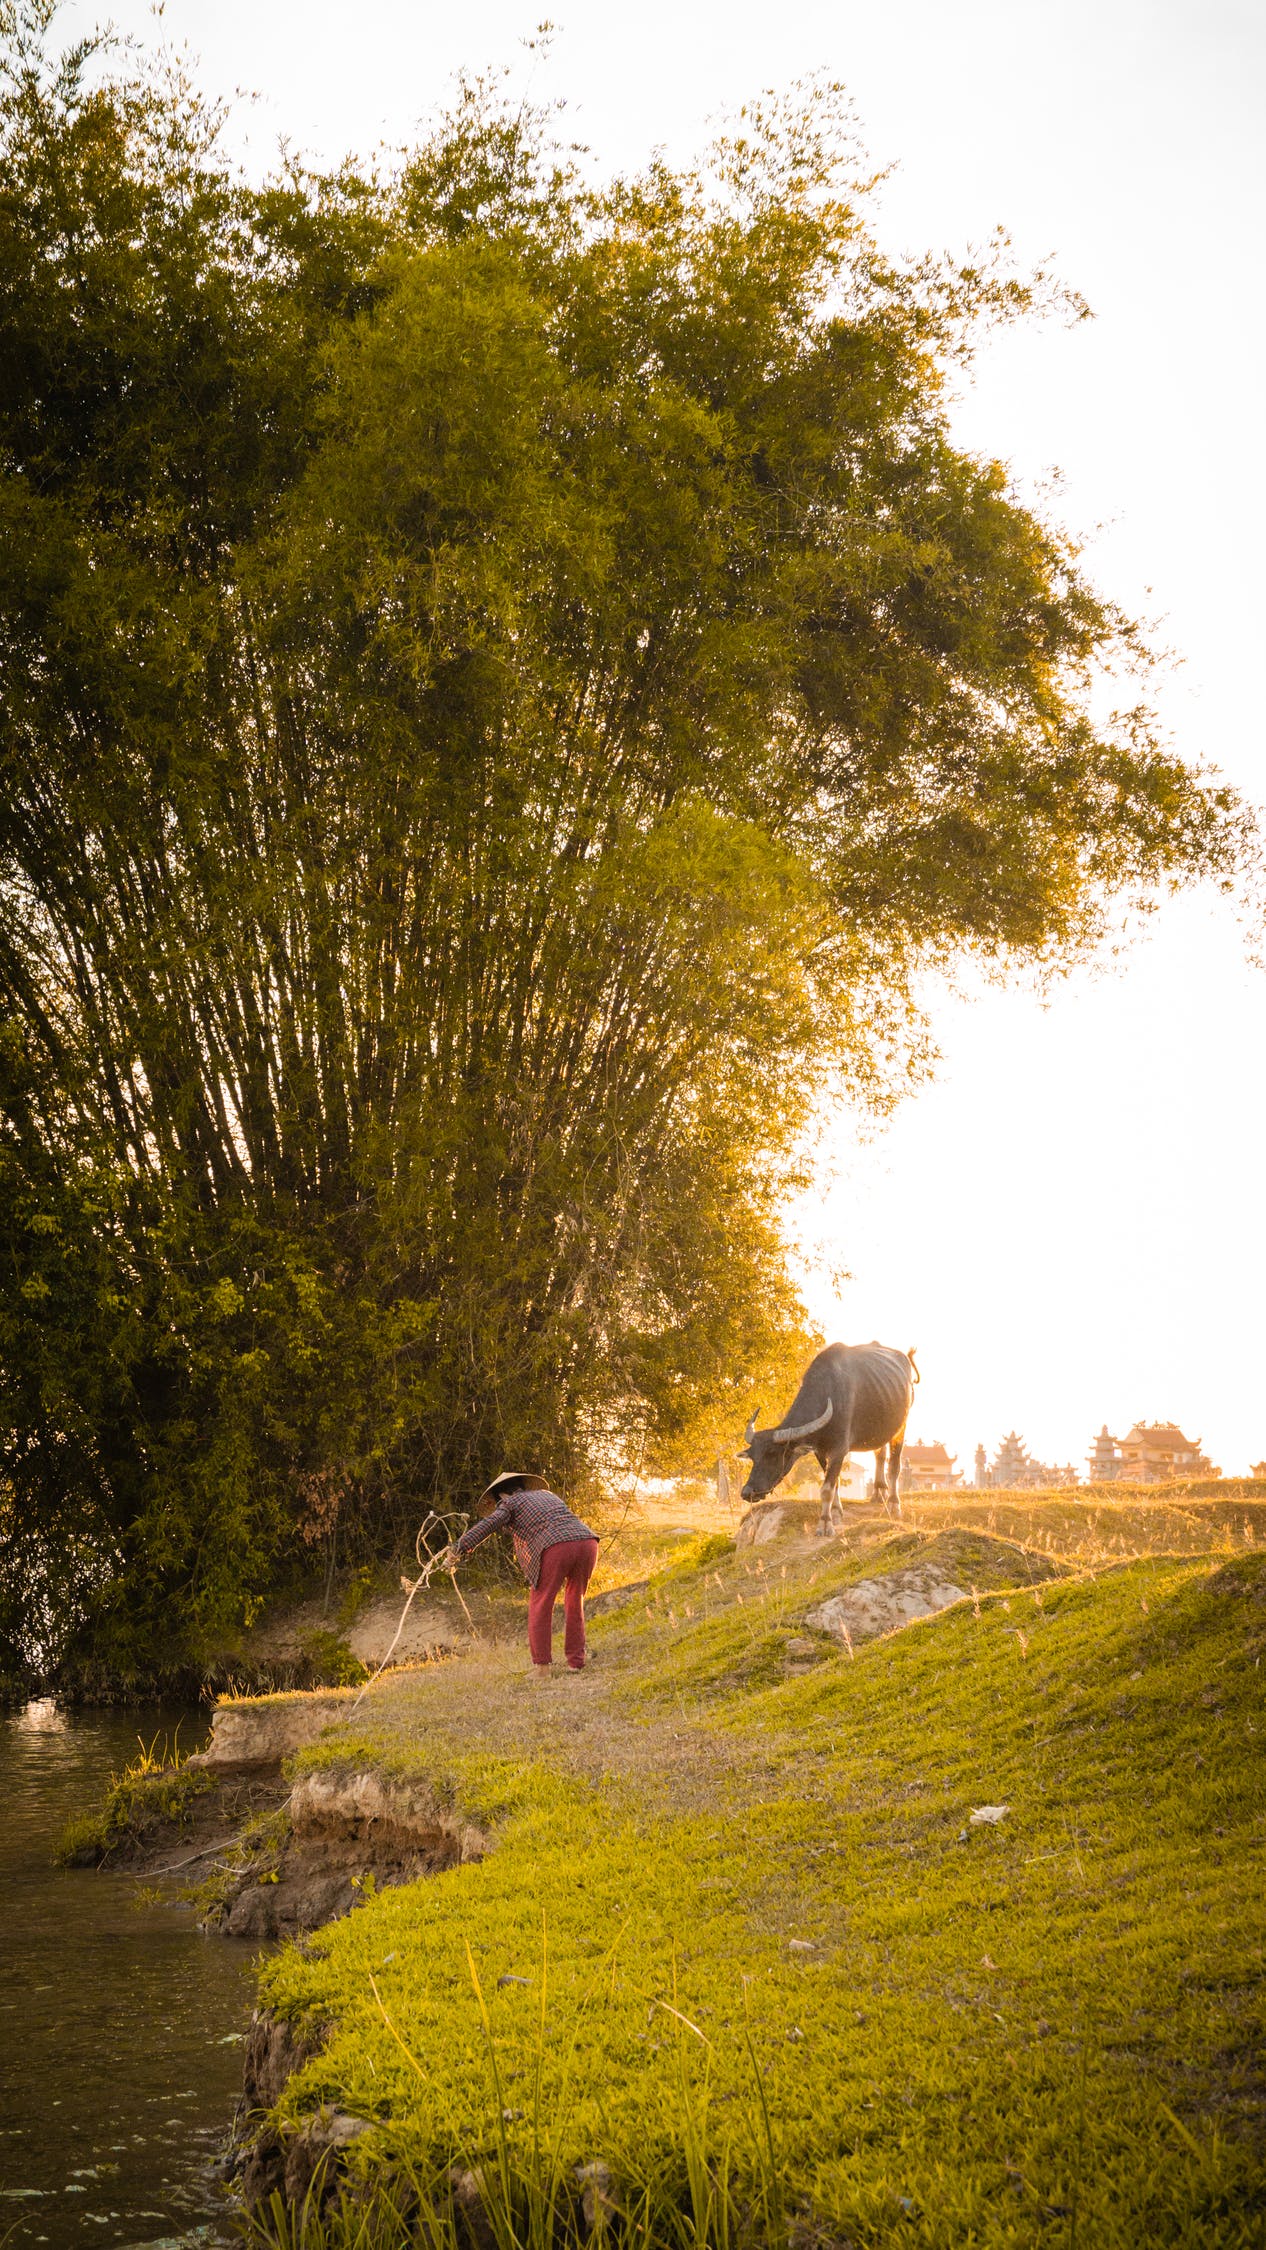 Với đơn sơ và chân thành, những nét đẹp giản dị của miền quê Việt Nam luôn làm cho người ta cảm thấy gần gũi và thân thiết. Để hiểu rõ hơn về sức mạnh của sự đơn giản, hãy xem ngay hình ảnh liên quan đến đơn sơ và cảm nhận những giá trị tuyệt vời mà nó mang lại.